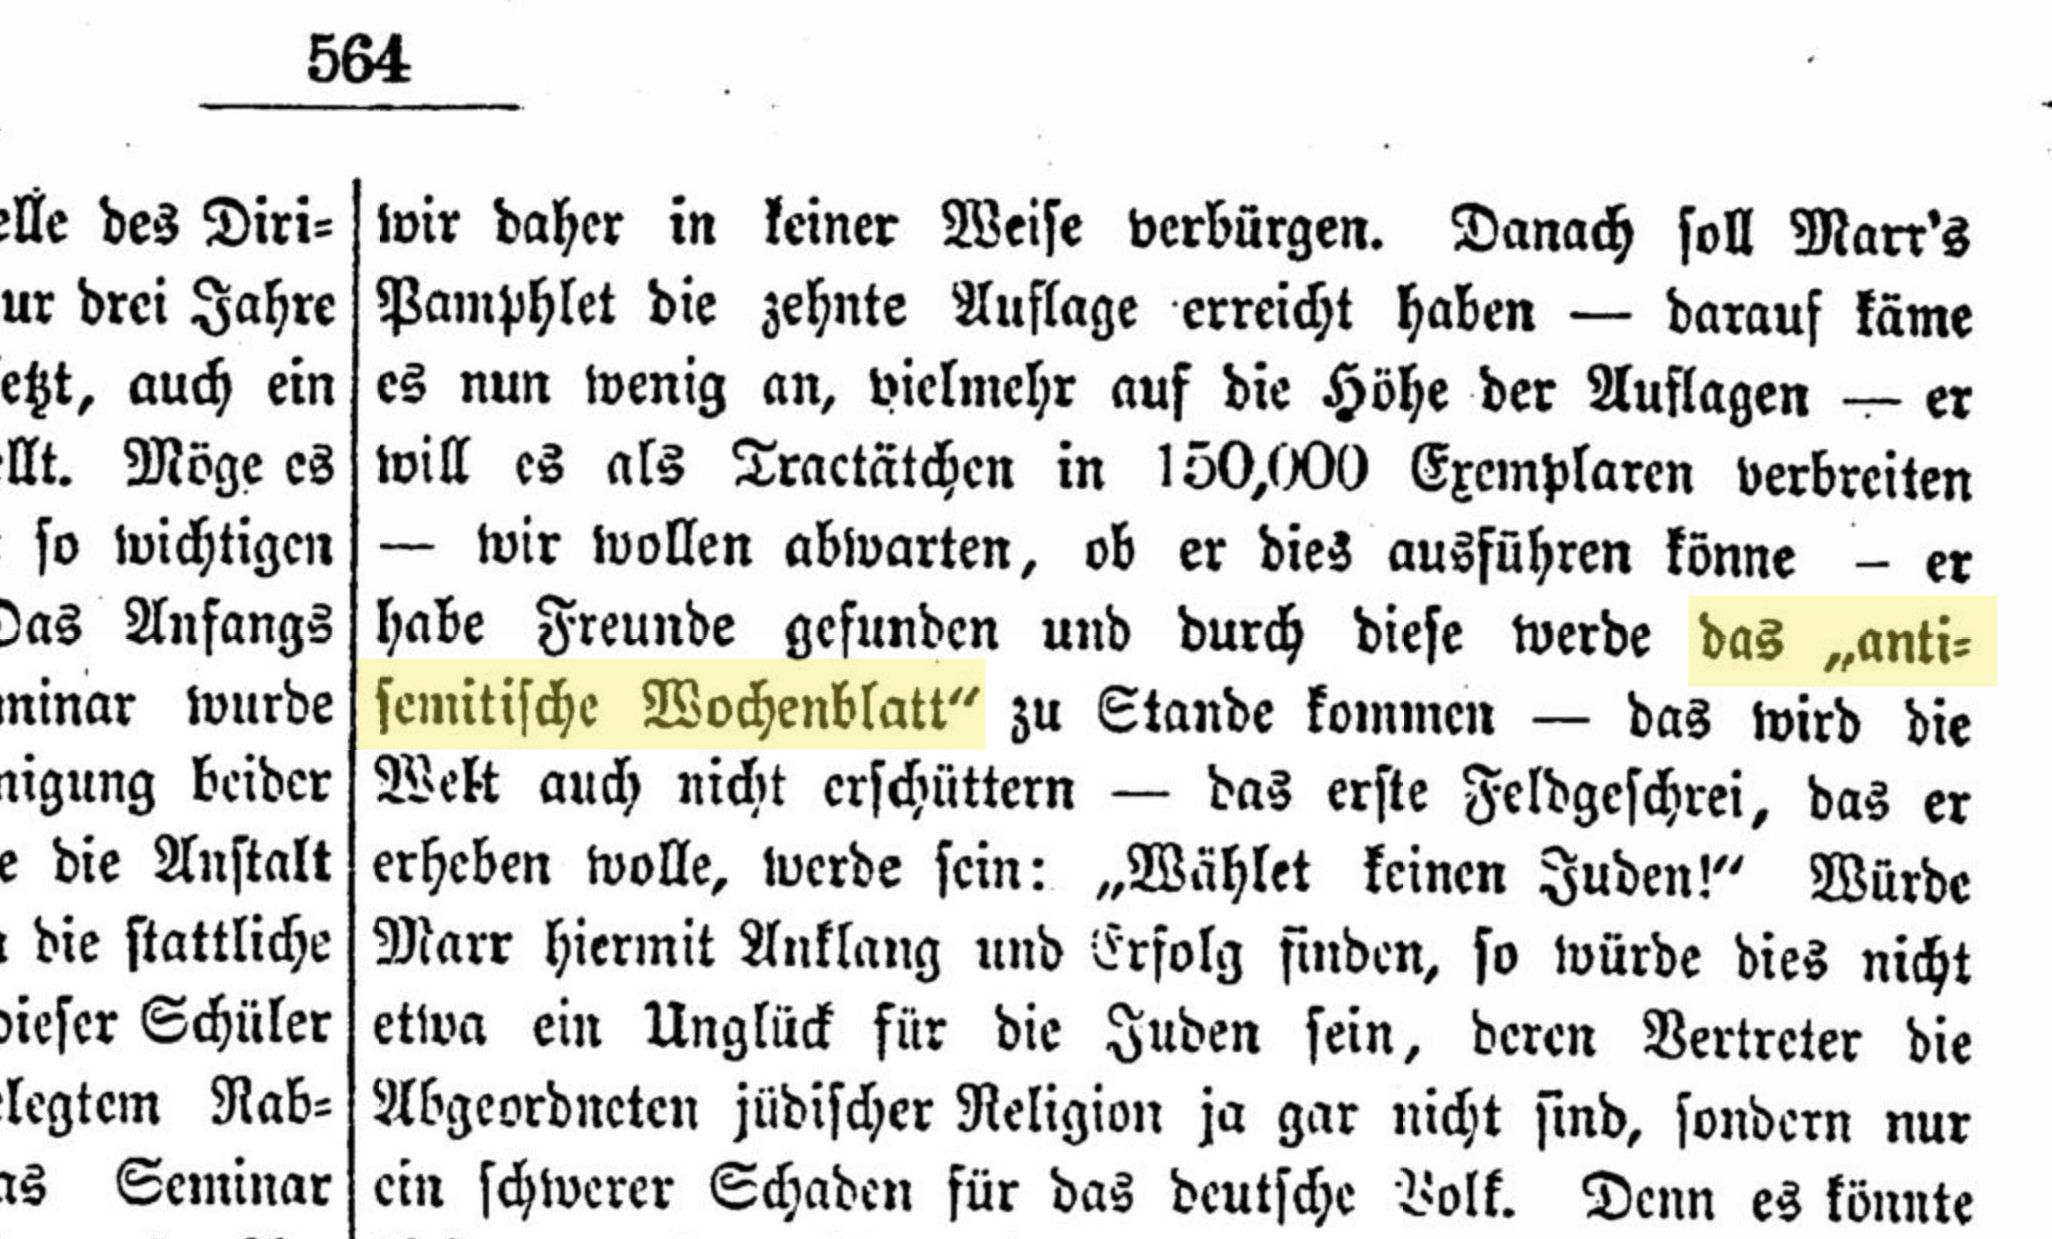 Allgemeine Zeitung des Judenthums</I>, 2/09/1879 p. 564